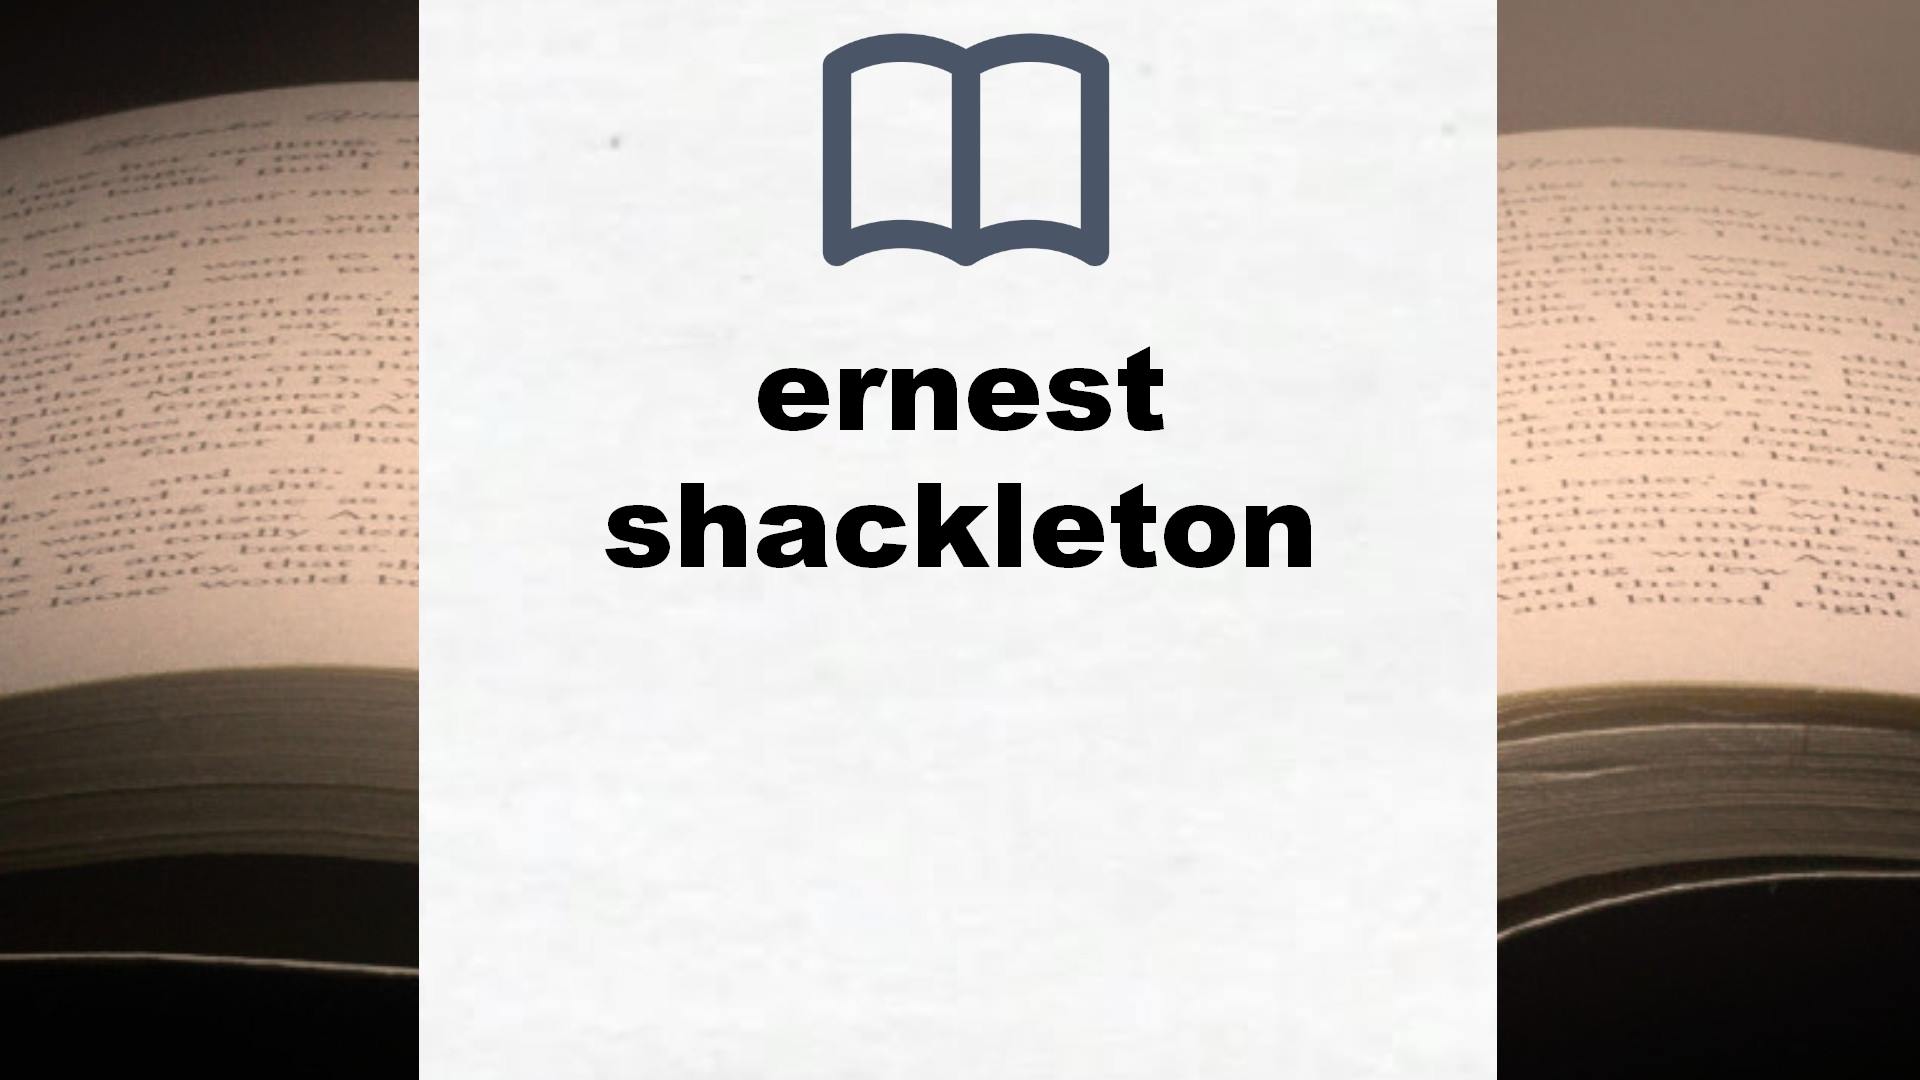 Libros sobre ernest shackleton